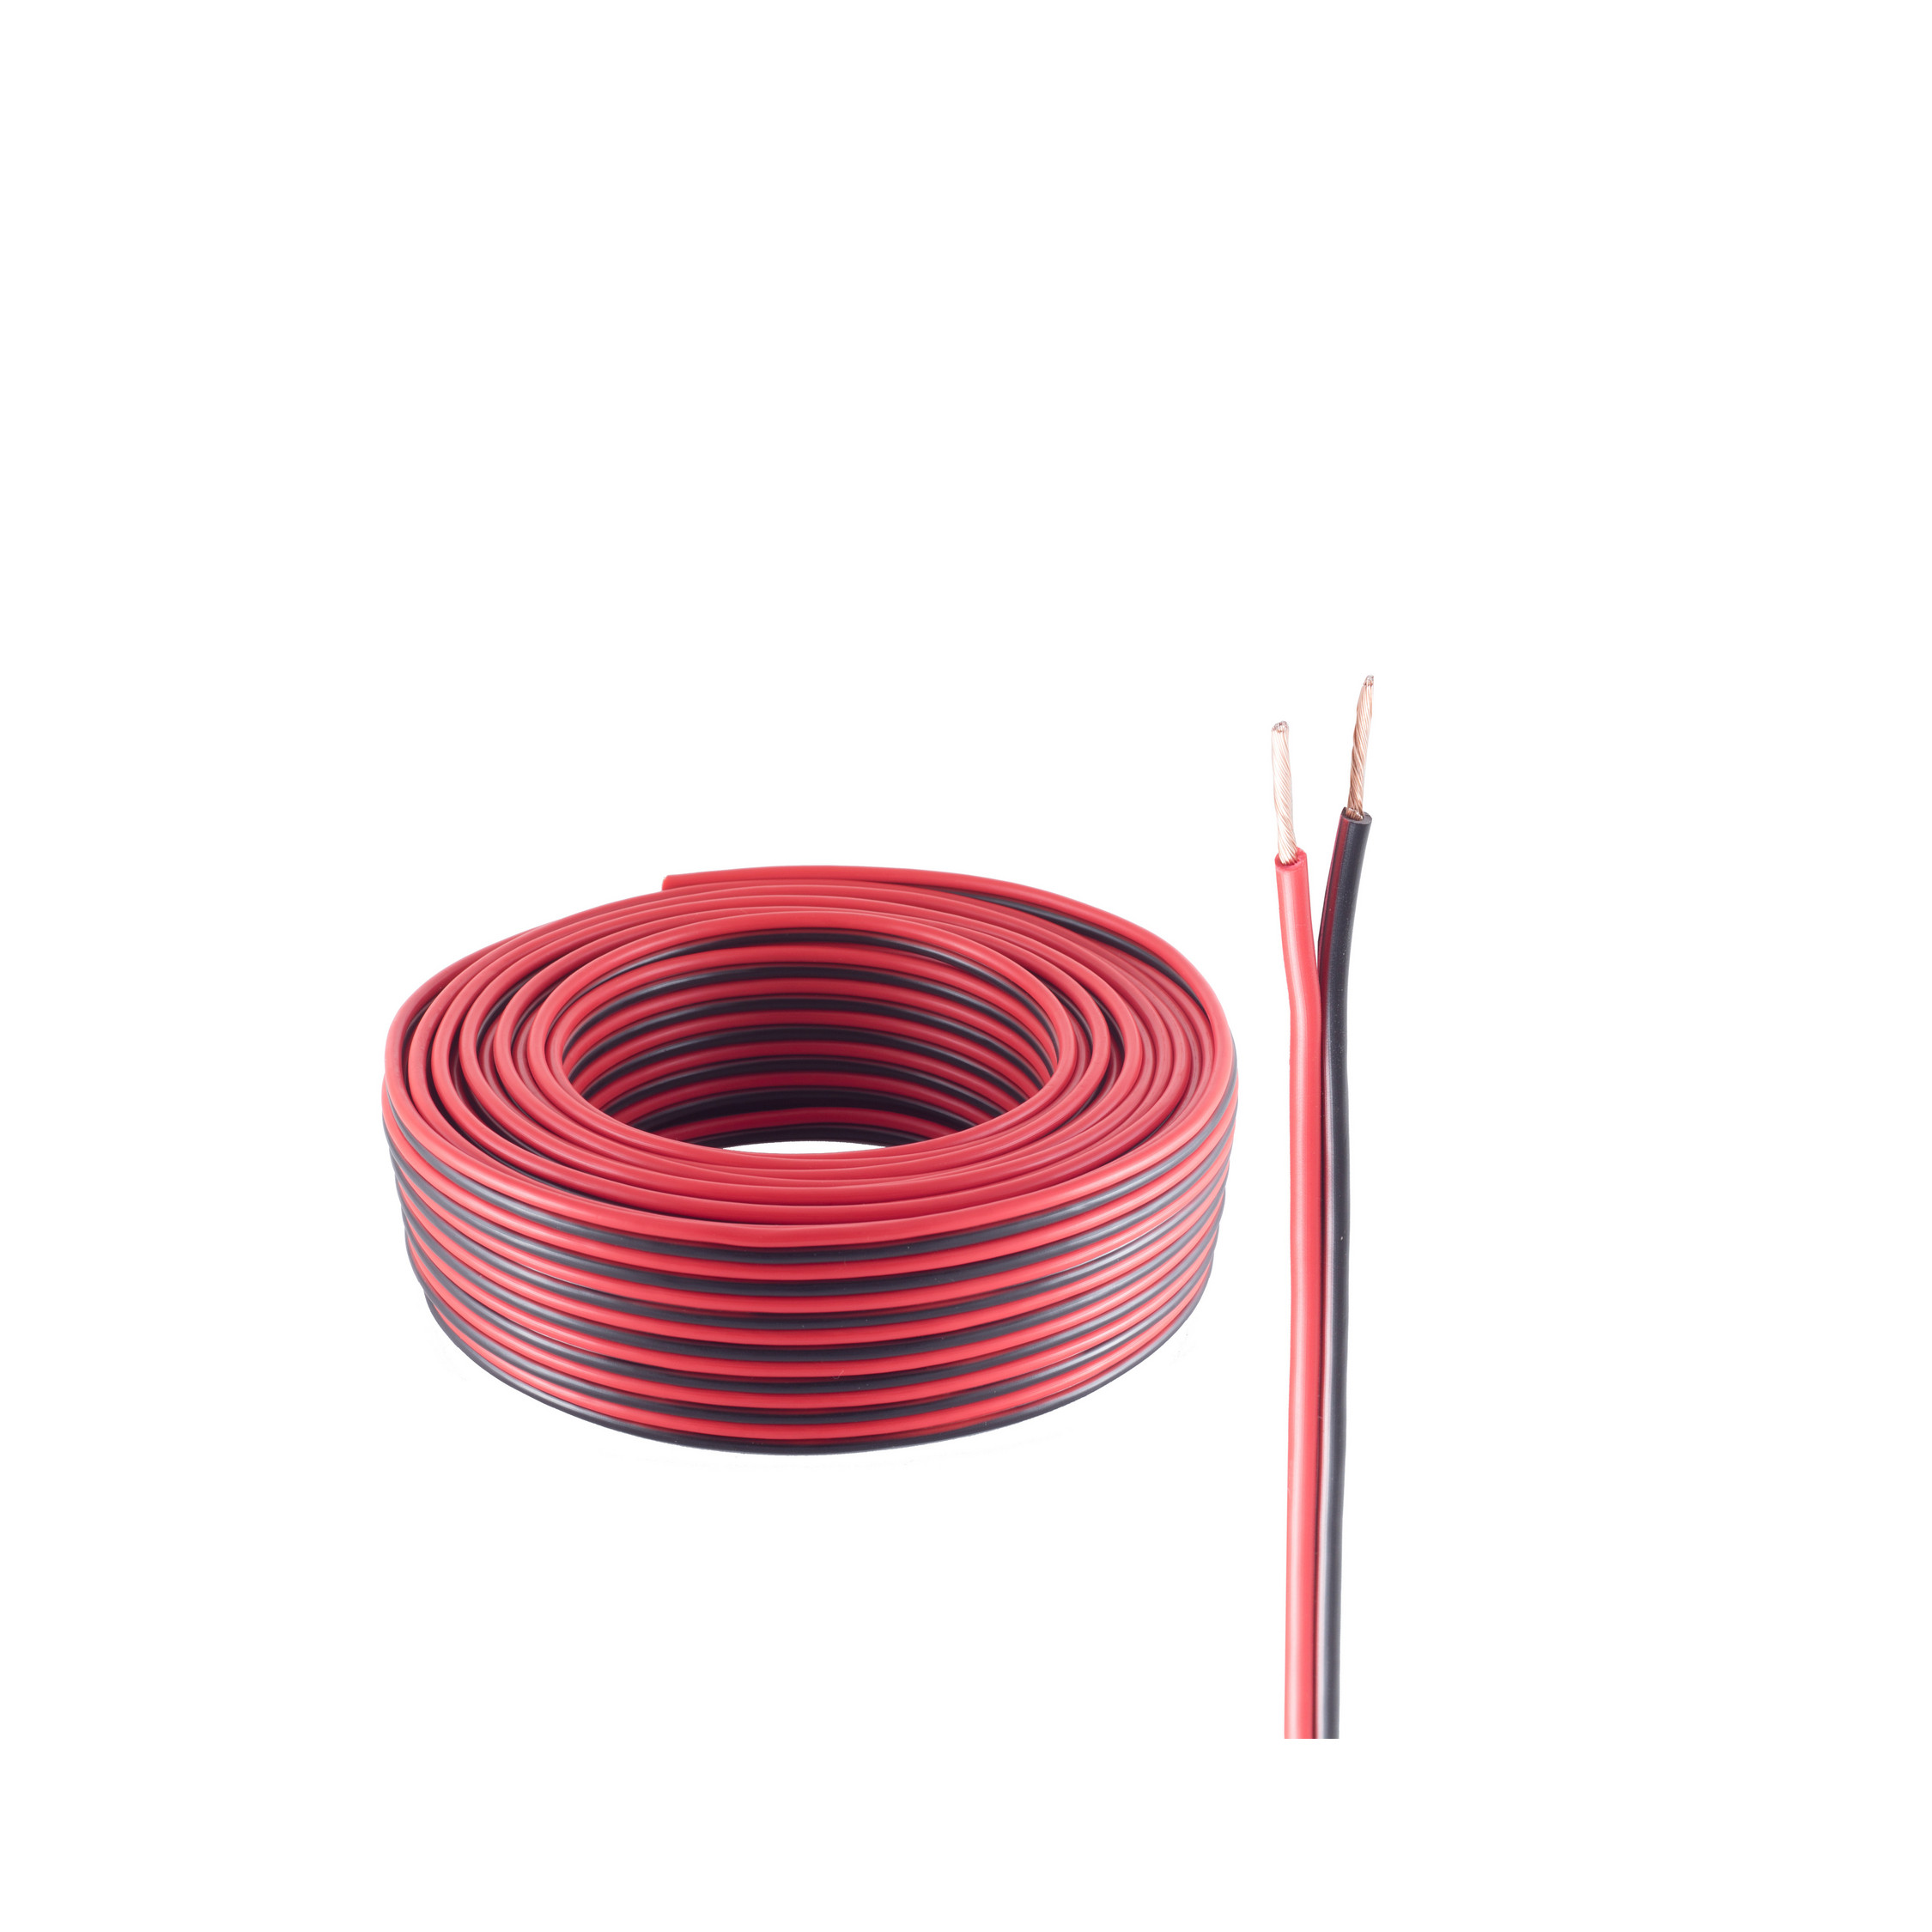 SHIVERPEAKS LS-Kabel Kabel, 100m, 1,5mm² rot/schwarz 48x0,20 100 Lautsprecher m CCA